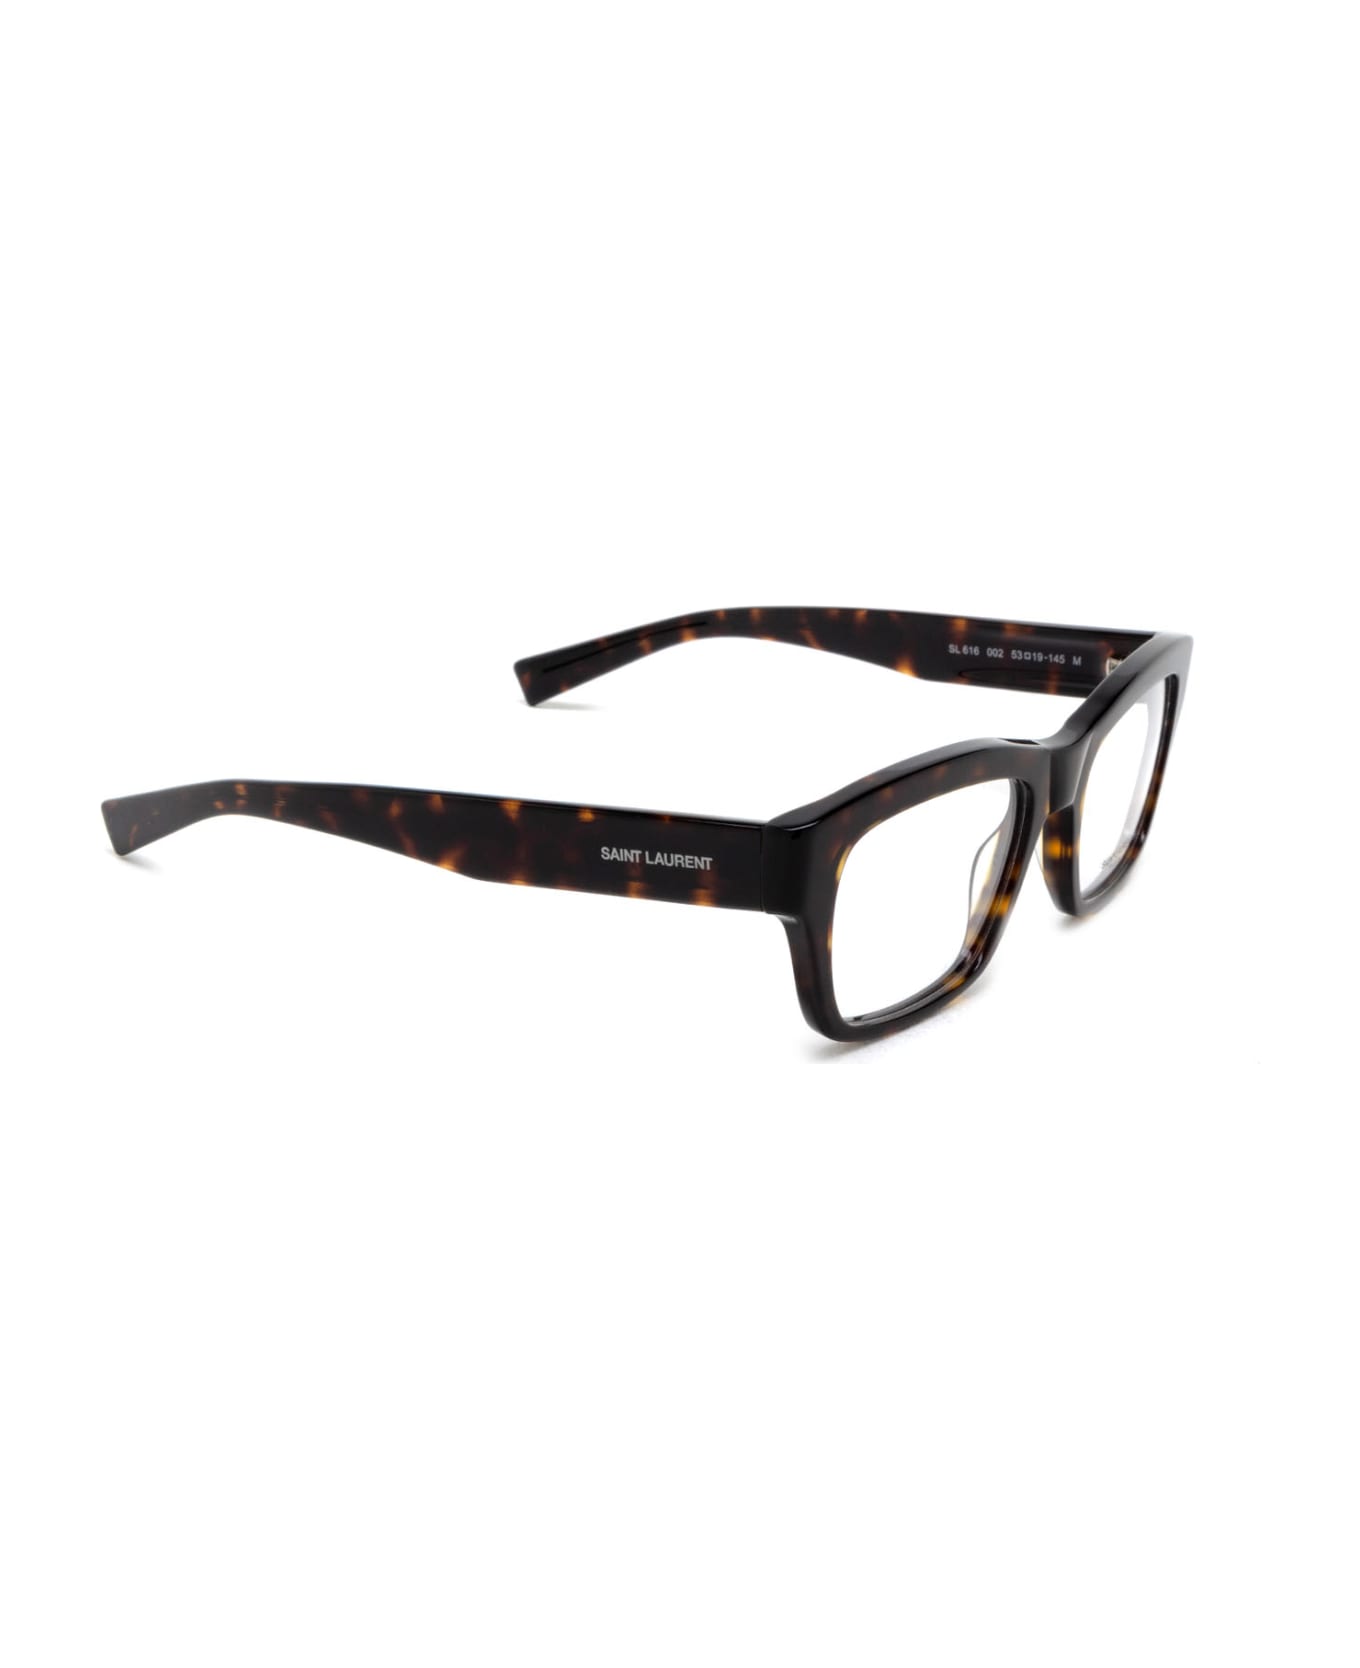 Saint Laurent Eyewear Sl 616 Havana Glasses - Havana アイウェア